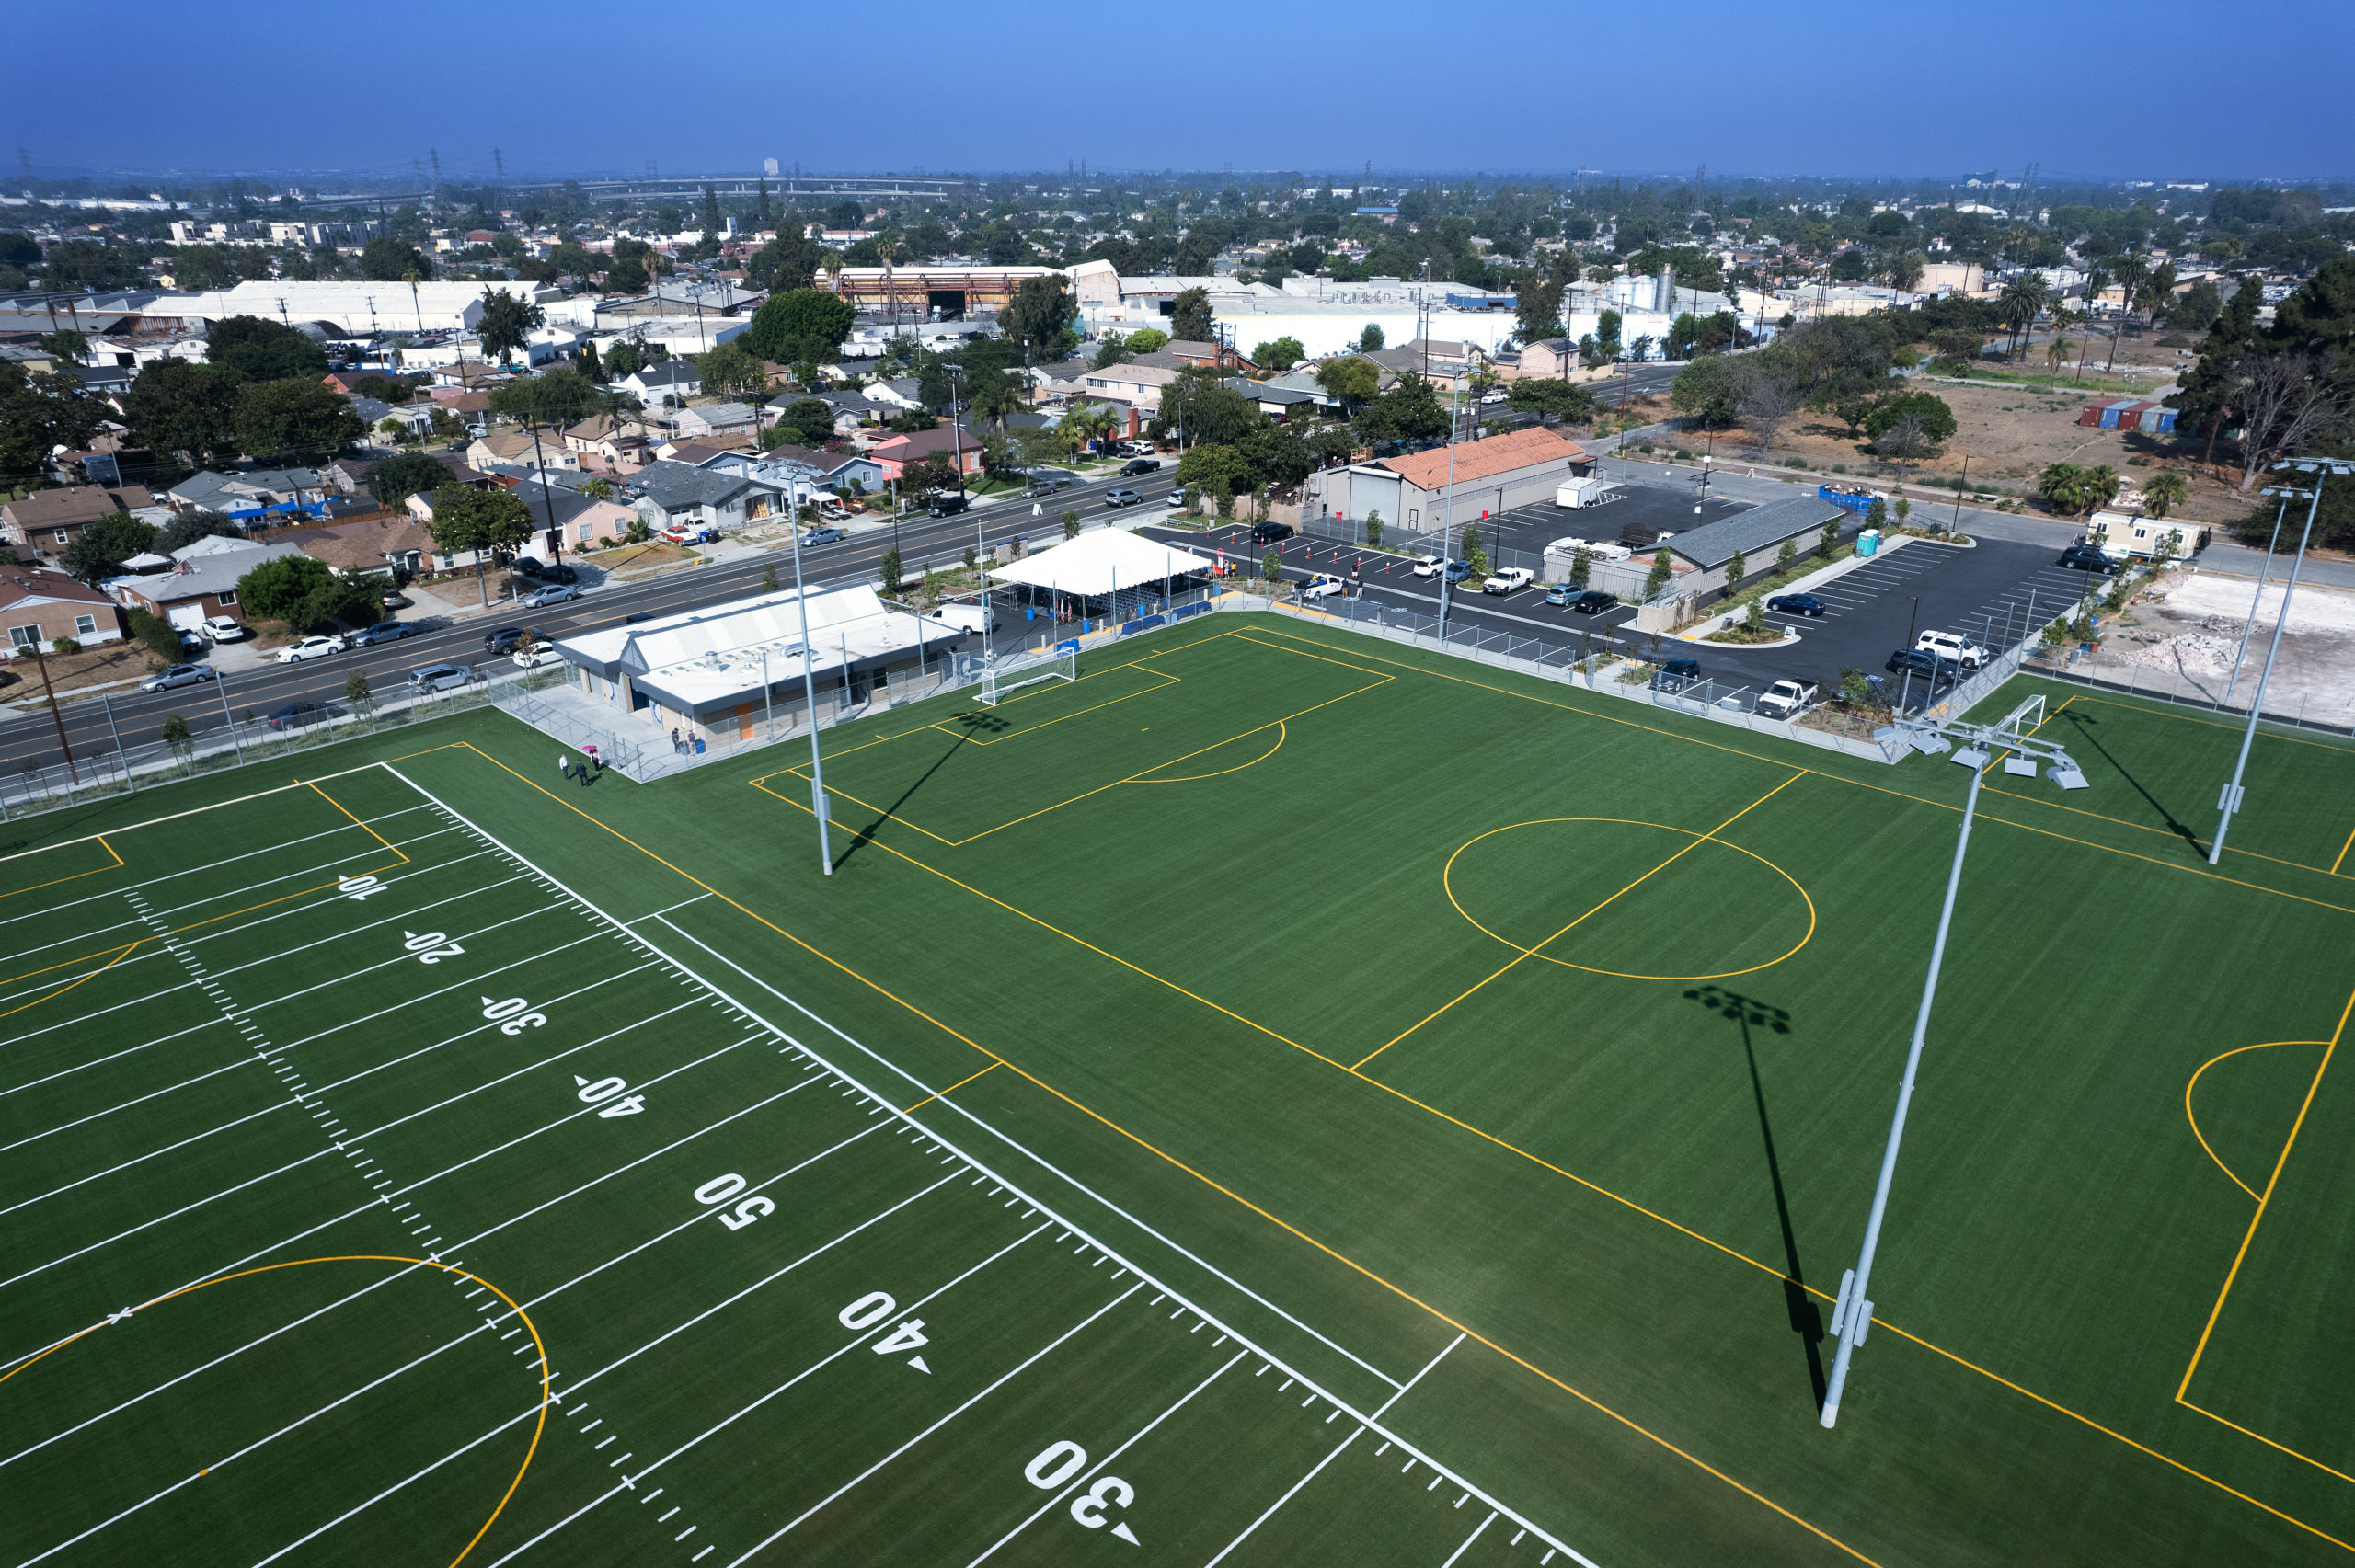 El supervisor Hahn y el alcalde de Downey, Pacheco, inauguran un nuevo complejo deportivo de 5 acres en Downey